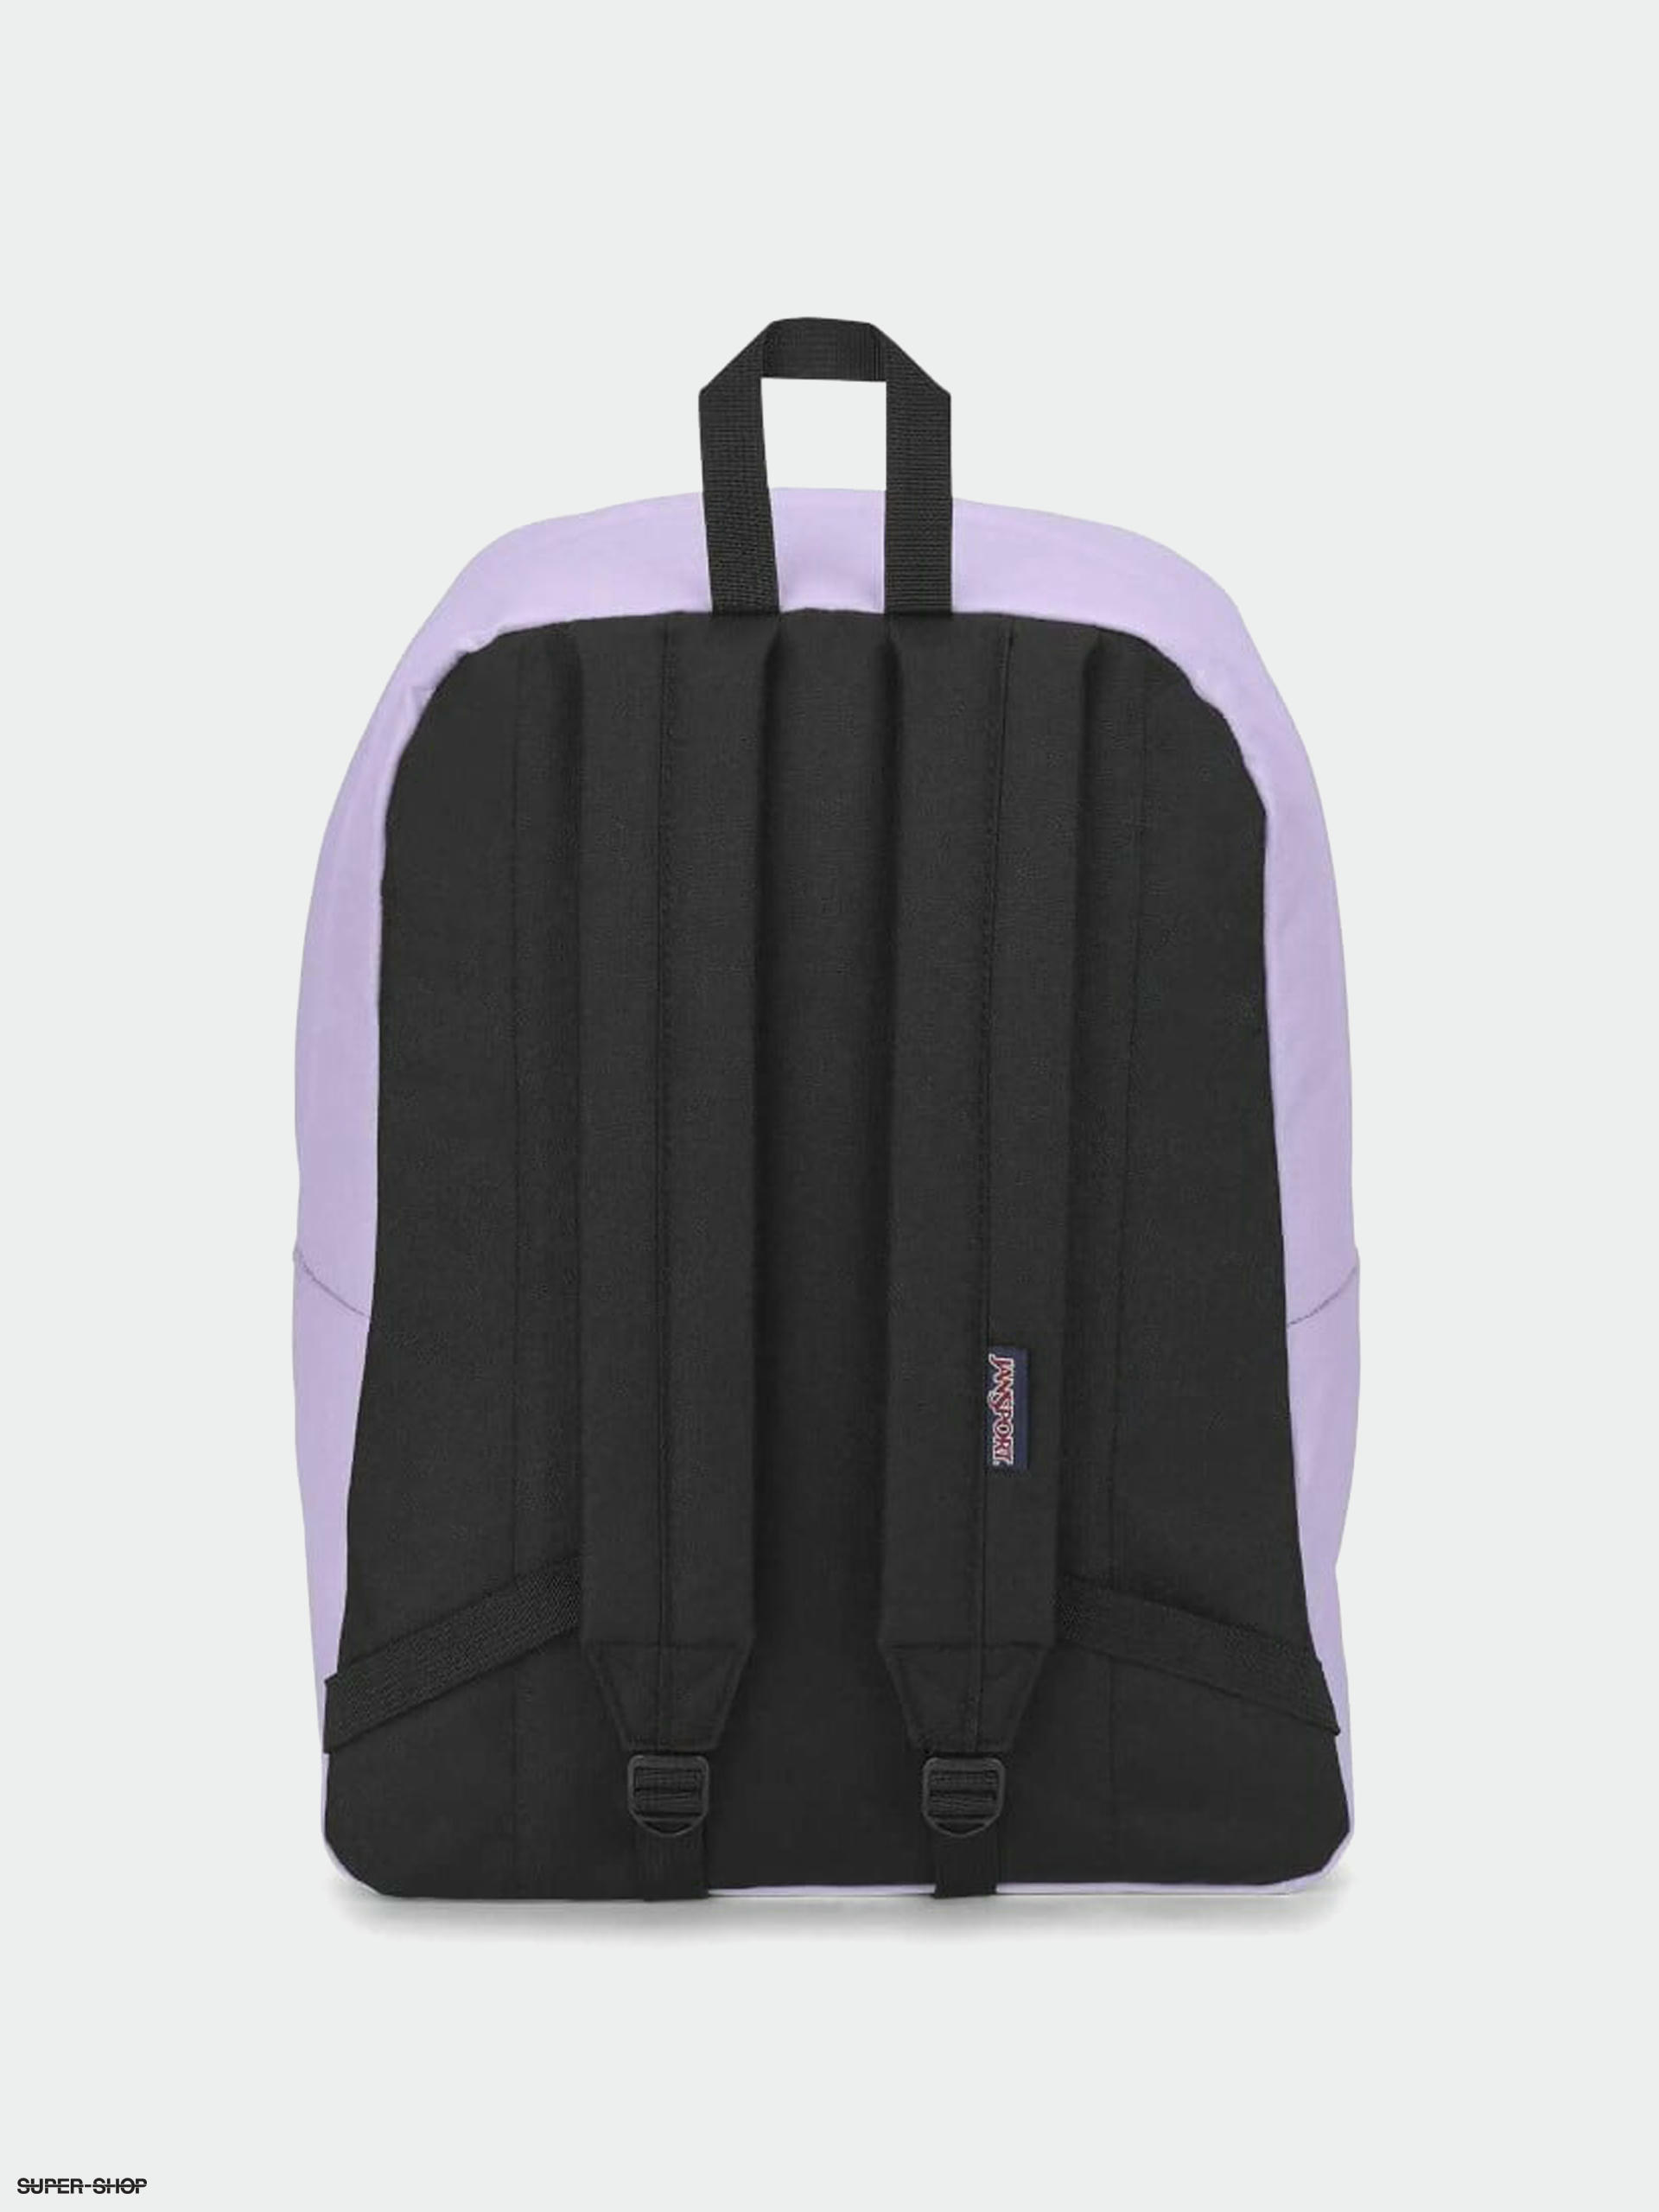 JanSport SuperBreak One Backpack (pastel lilac)